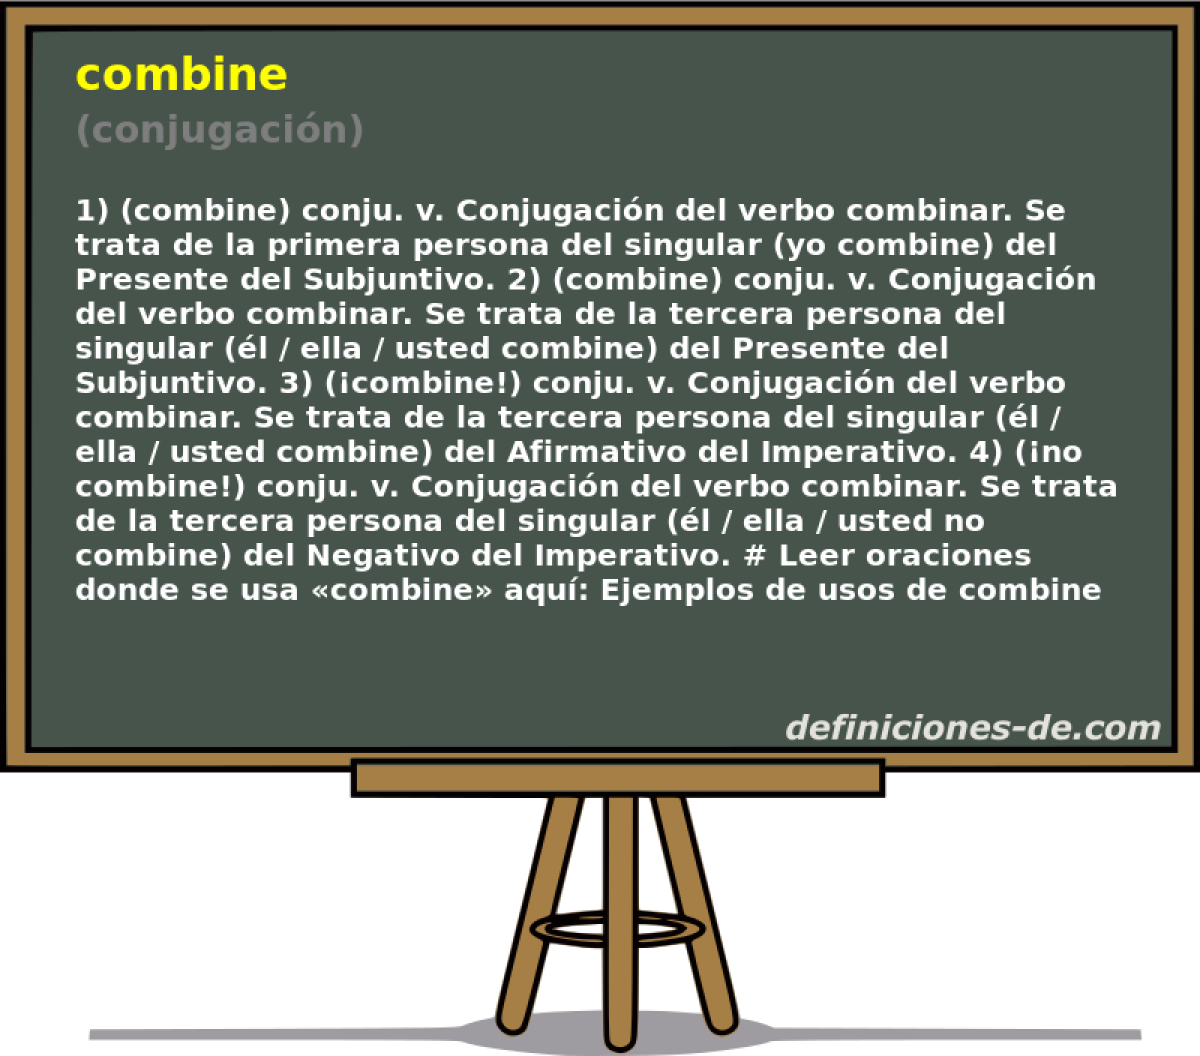 combine (conjugacin)